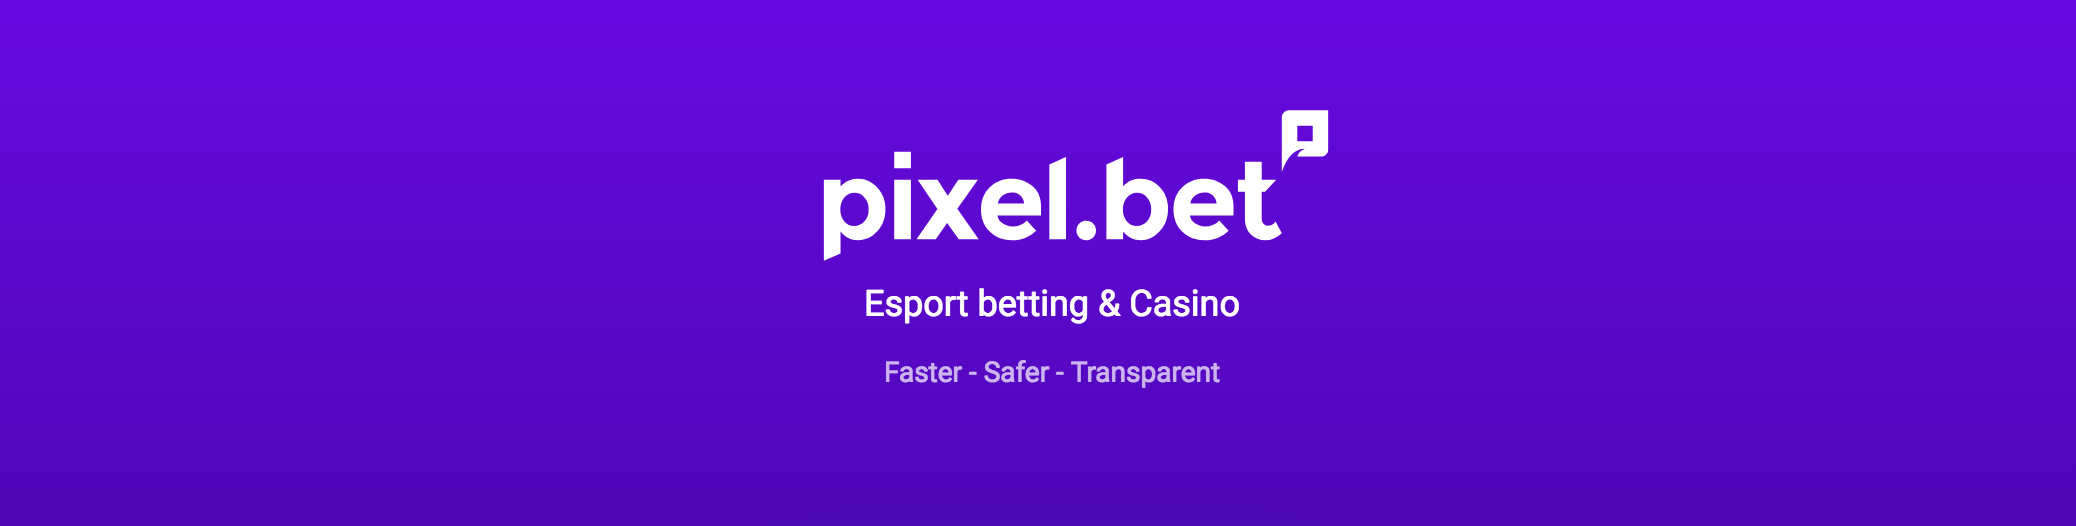 Pixel bet casino